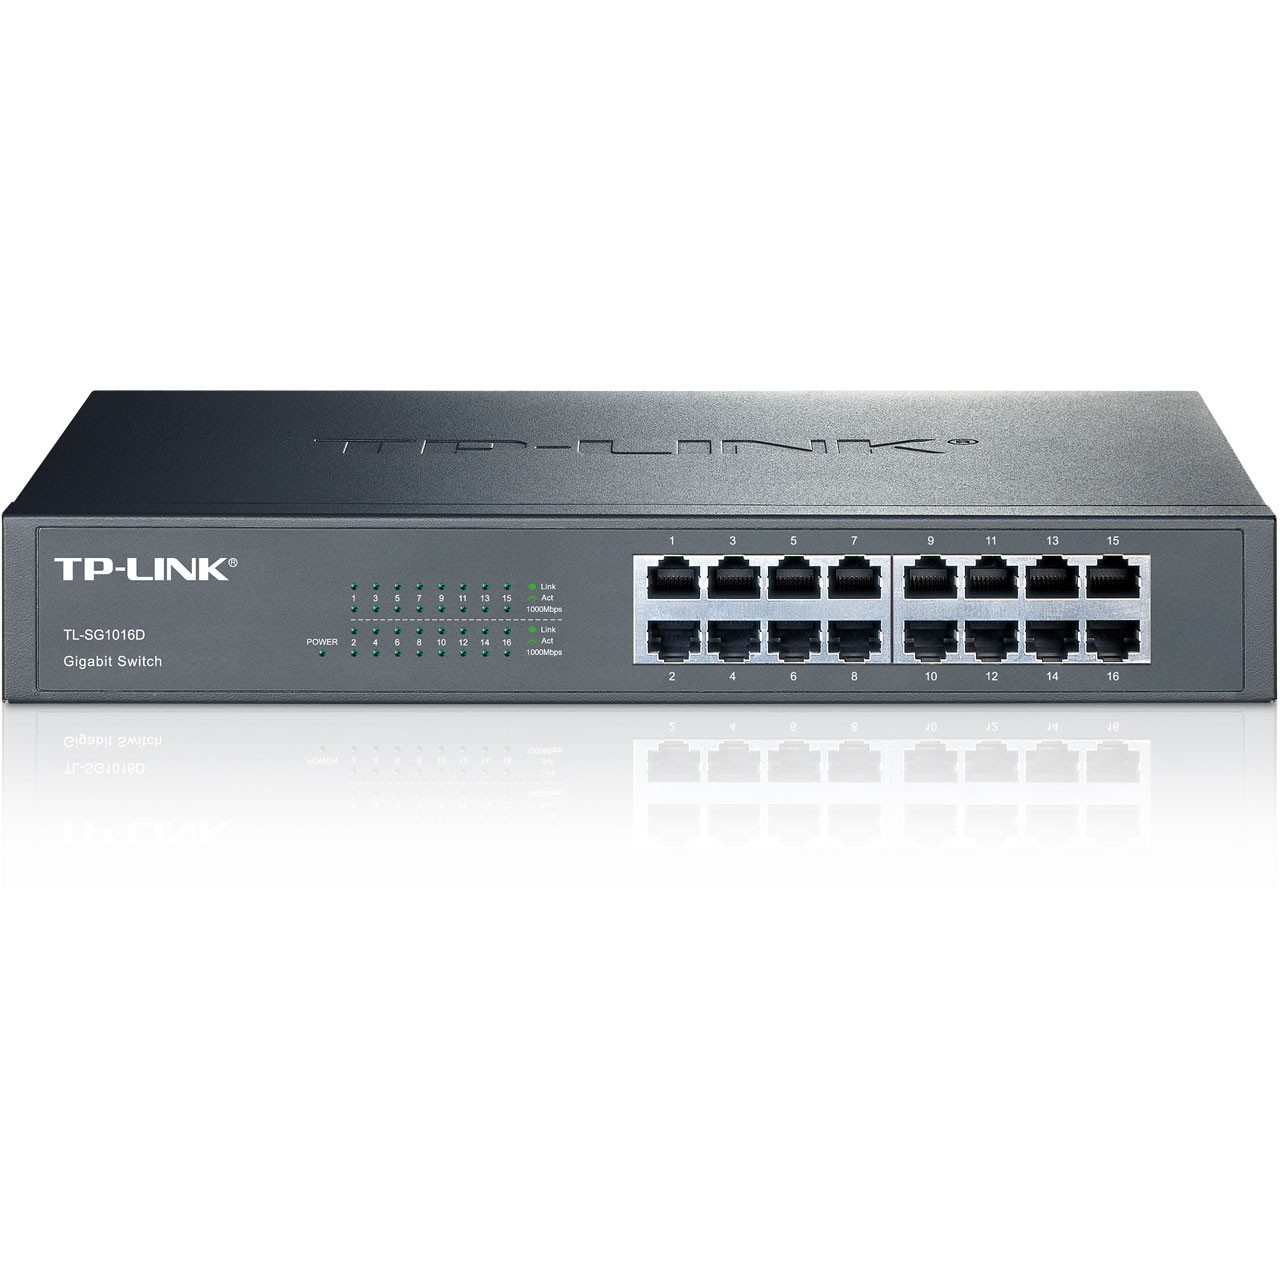 TP-LINK TL-SG1024D Switch 24 Ports Gigabit (Bureau/Rackable, Boîtier Métal)  - Switch réseau